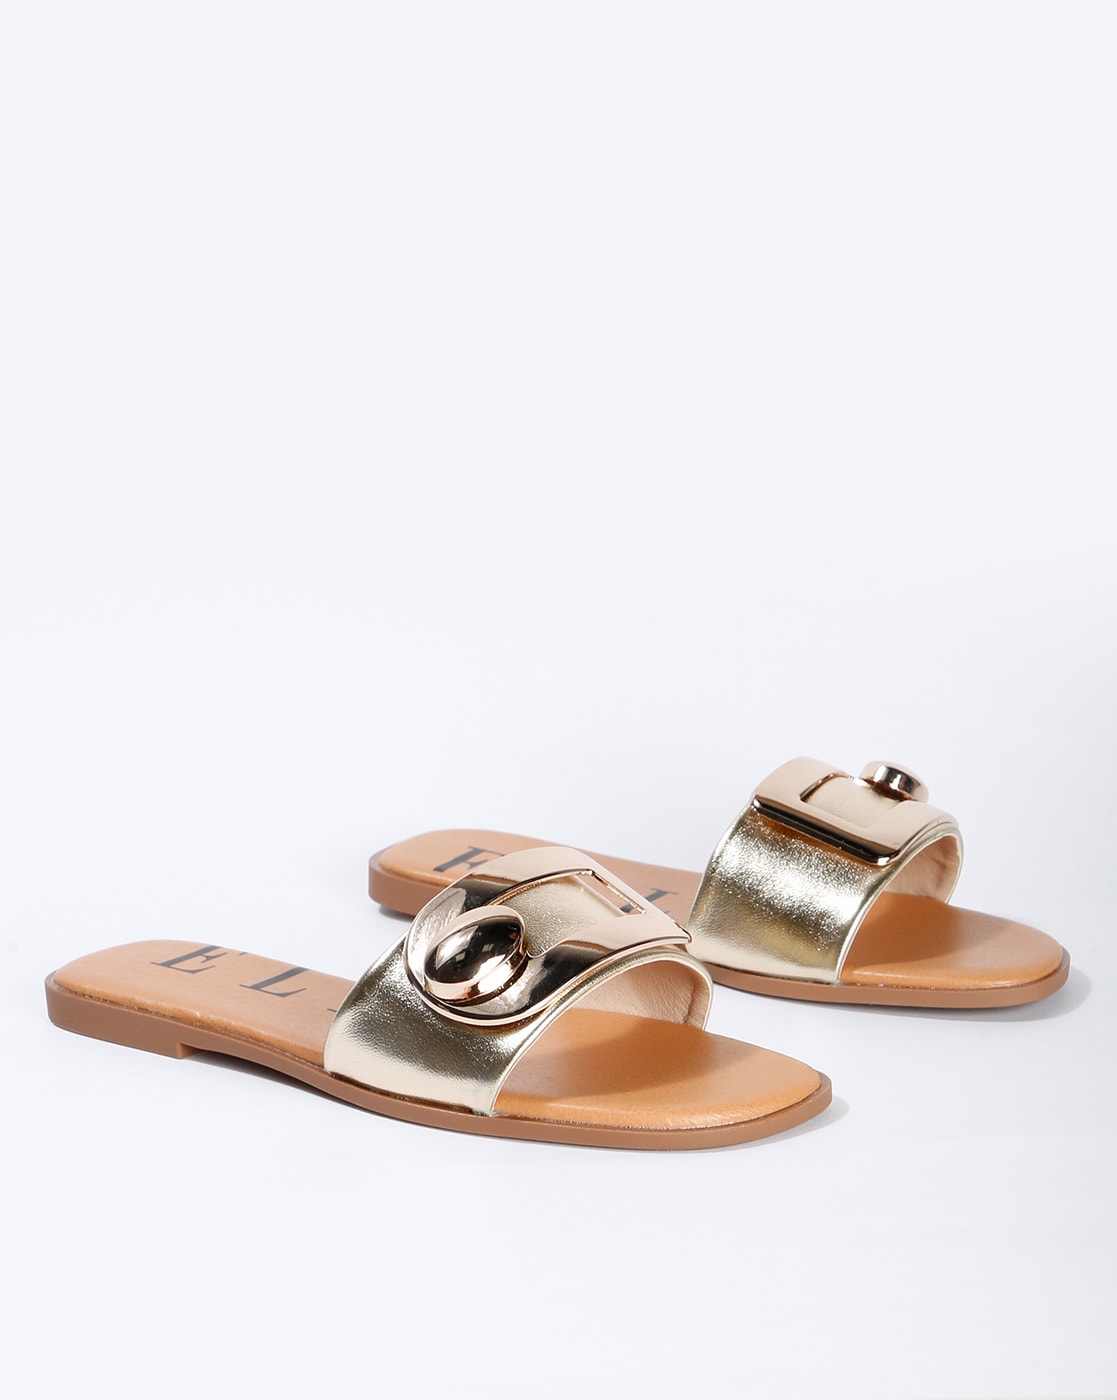 gold flat slide sandals